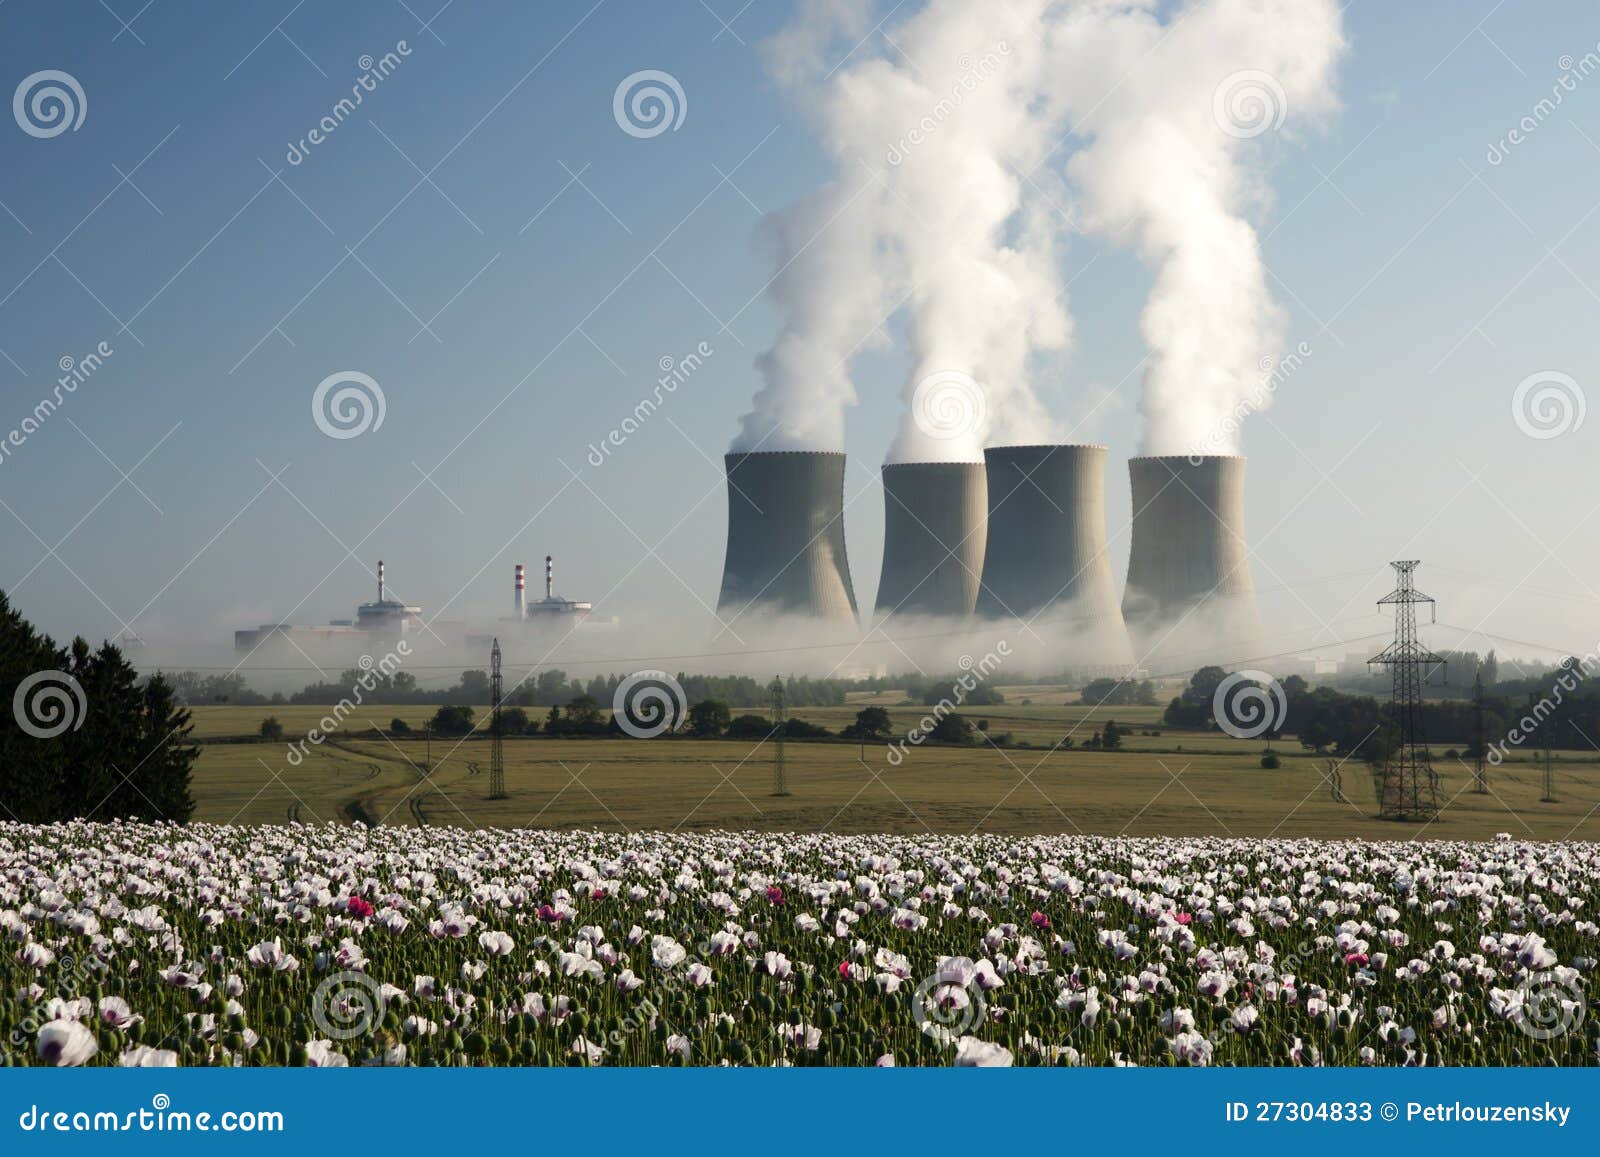 Temelin Nuclear Power Plant Stock Photography | CartoonDealer.com #23152208